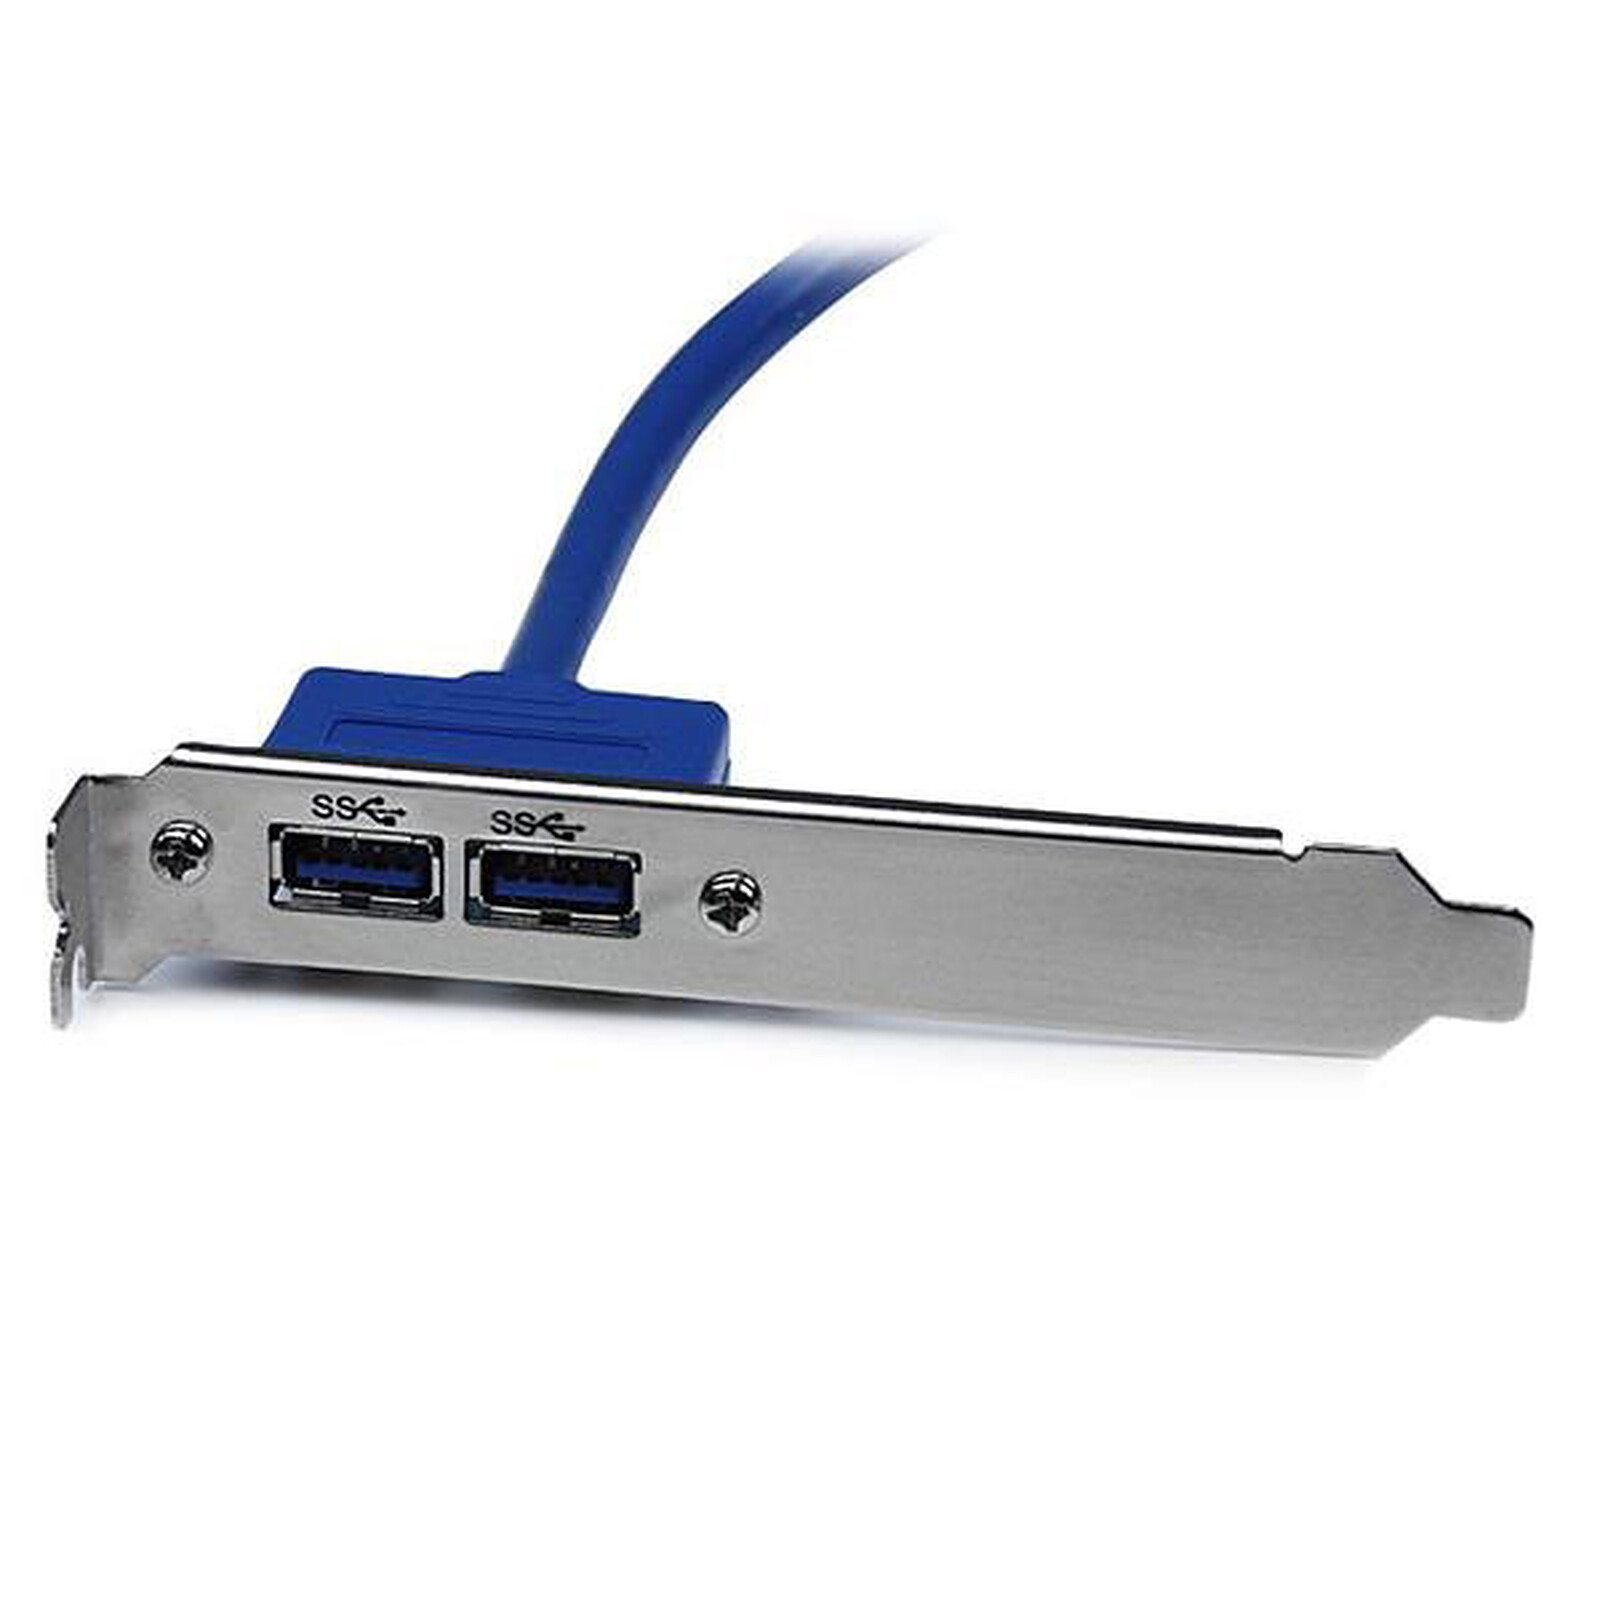 Connecteur USB IDC carte mère 5 Broches - Câbles USB internes et